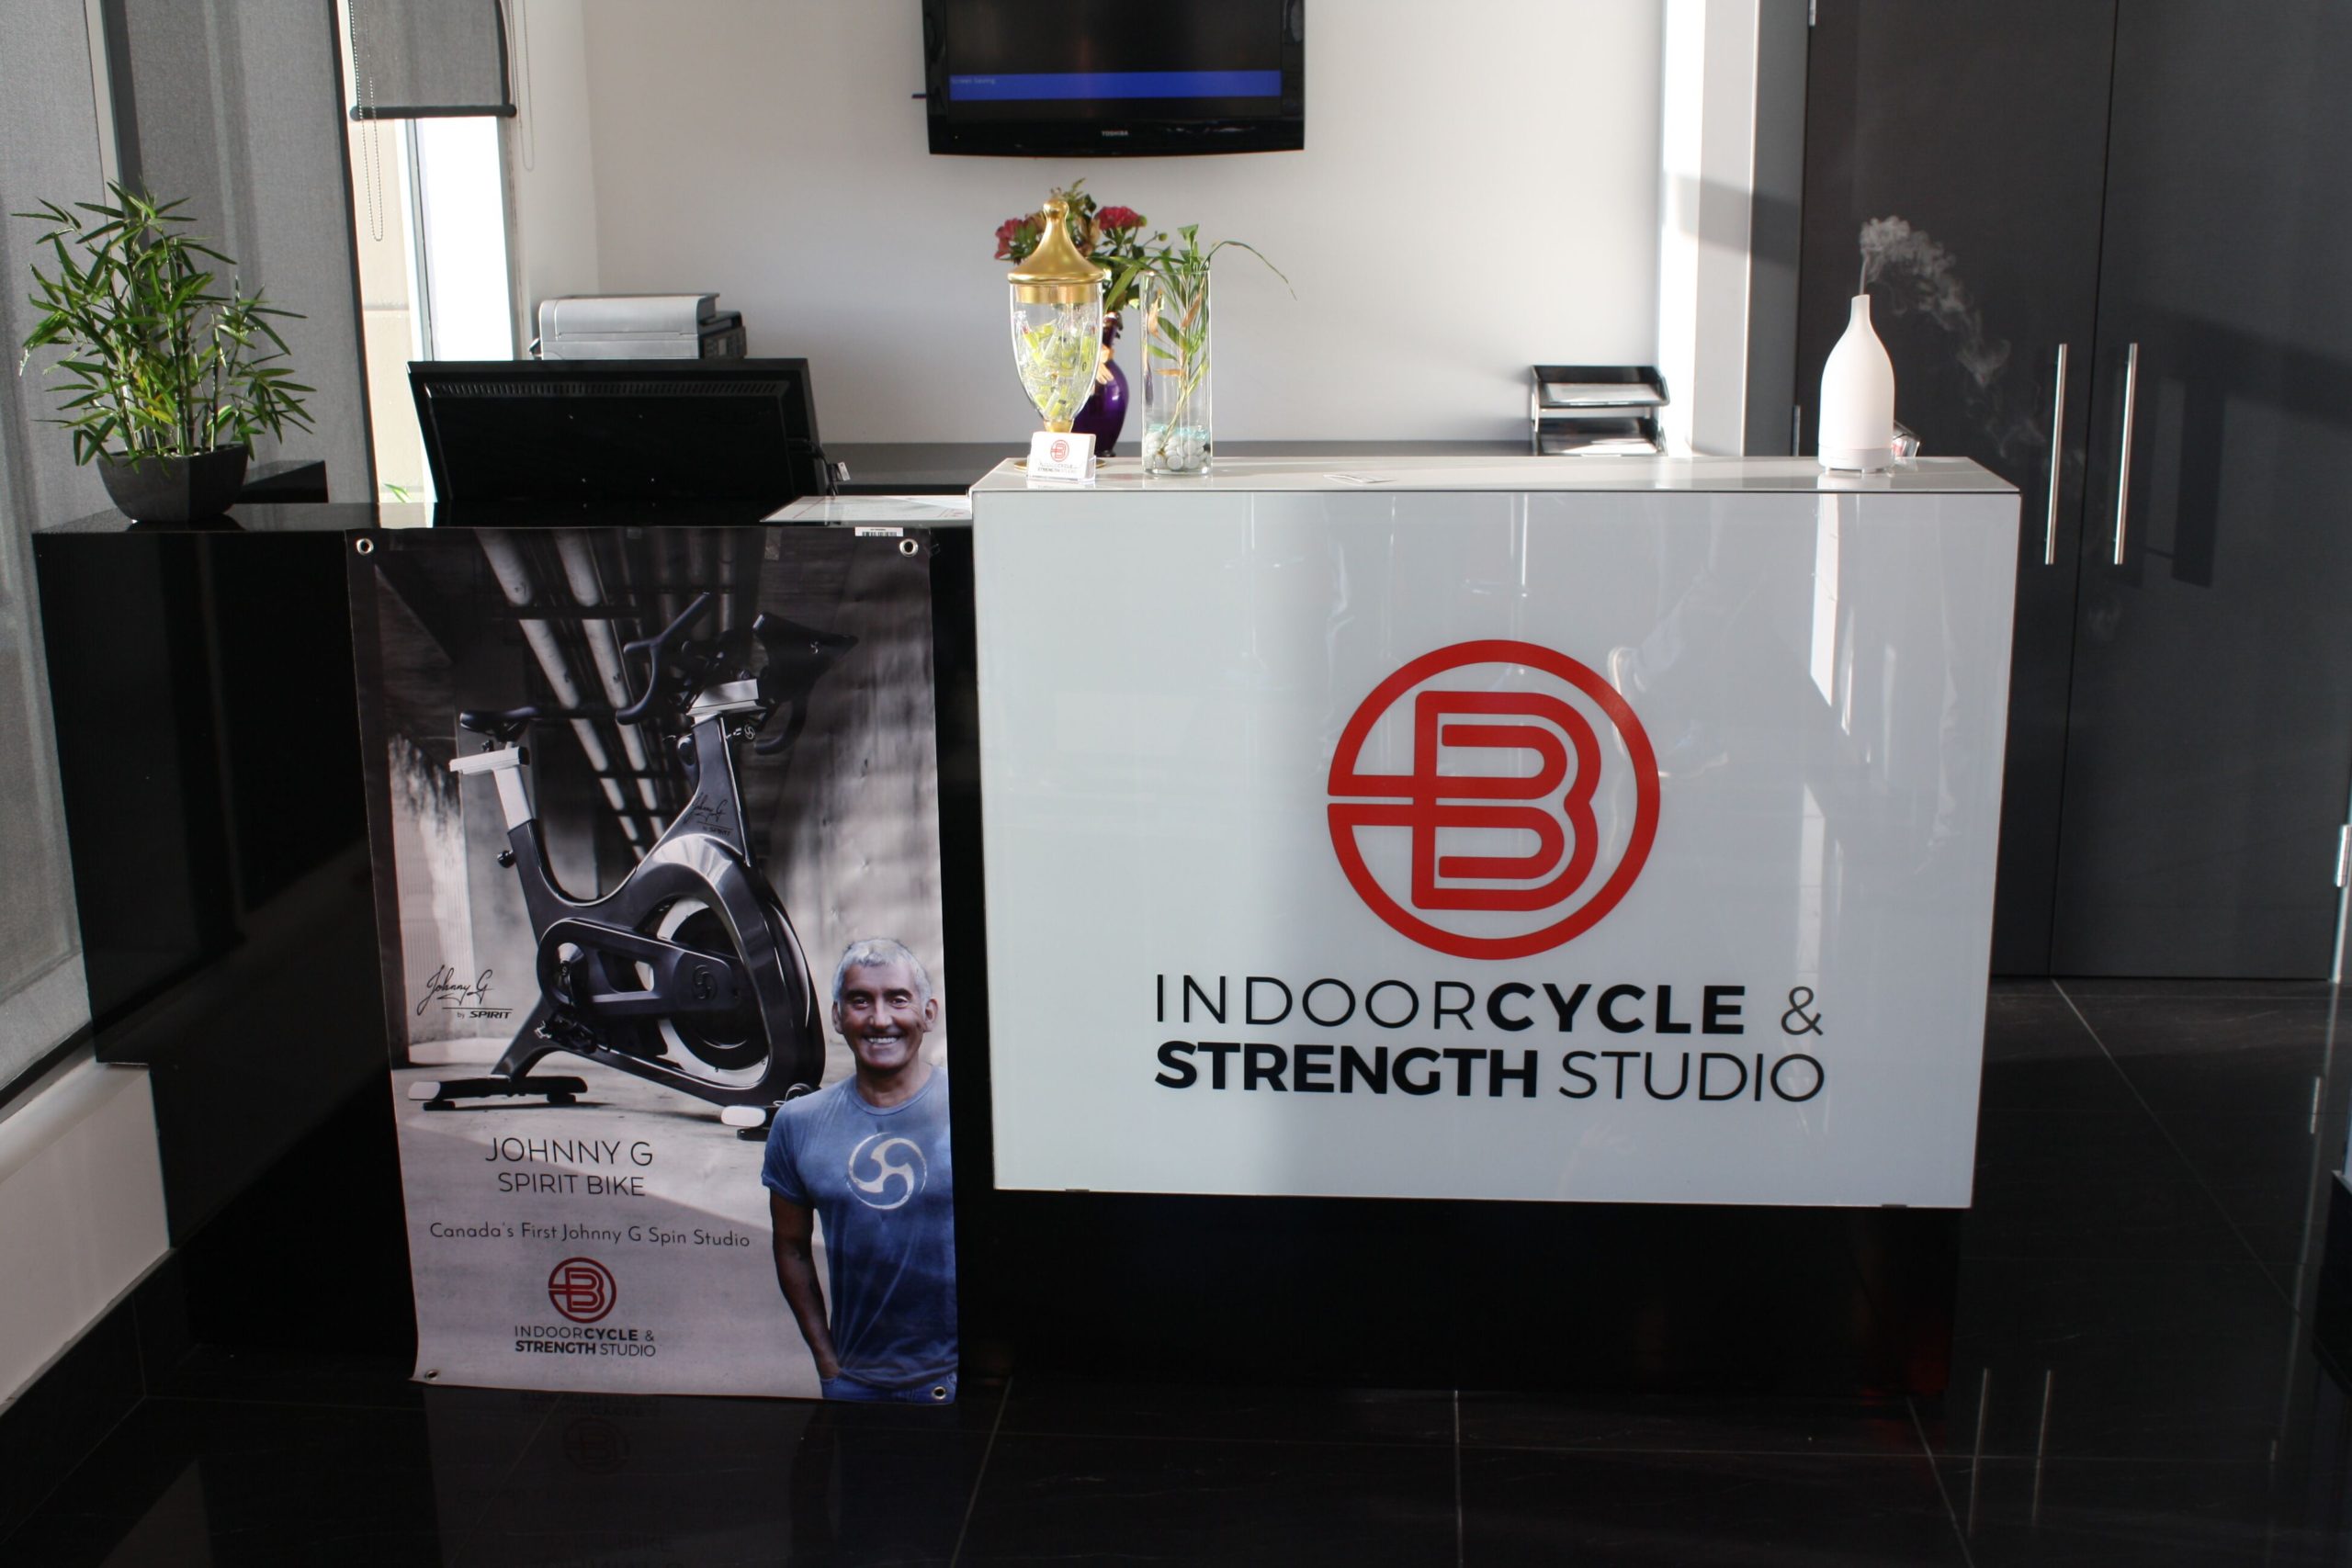 Idoorcycle & Strenght Studio